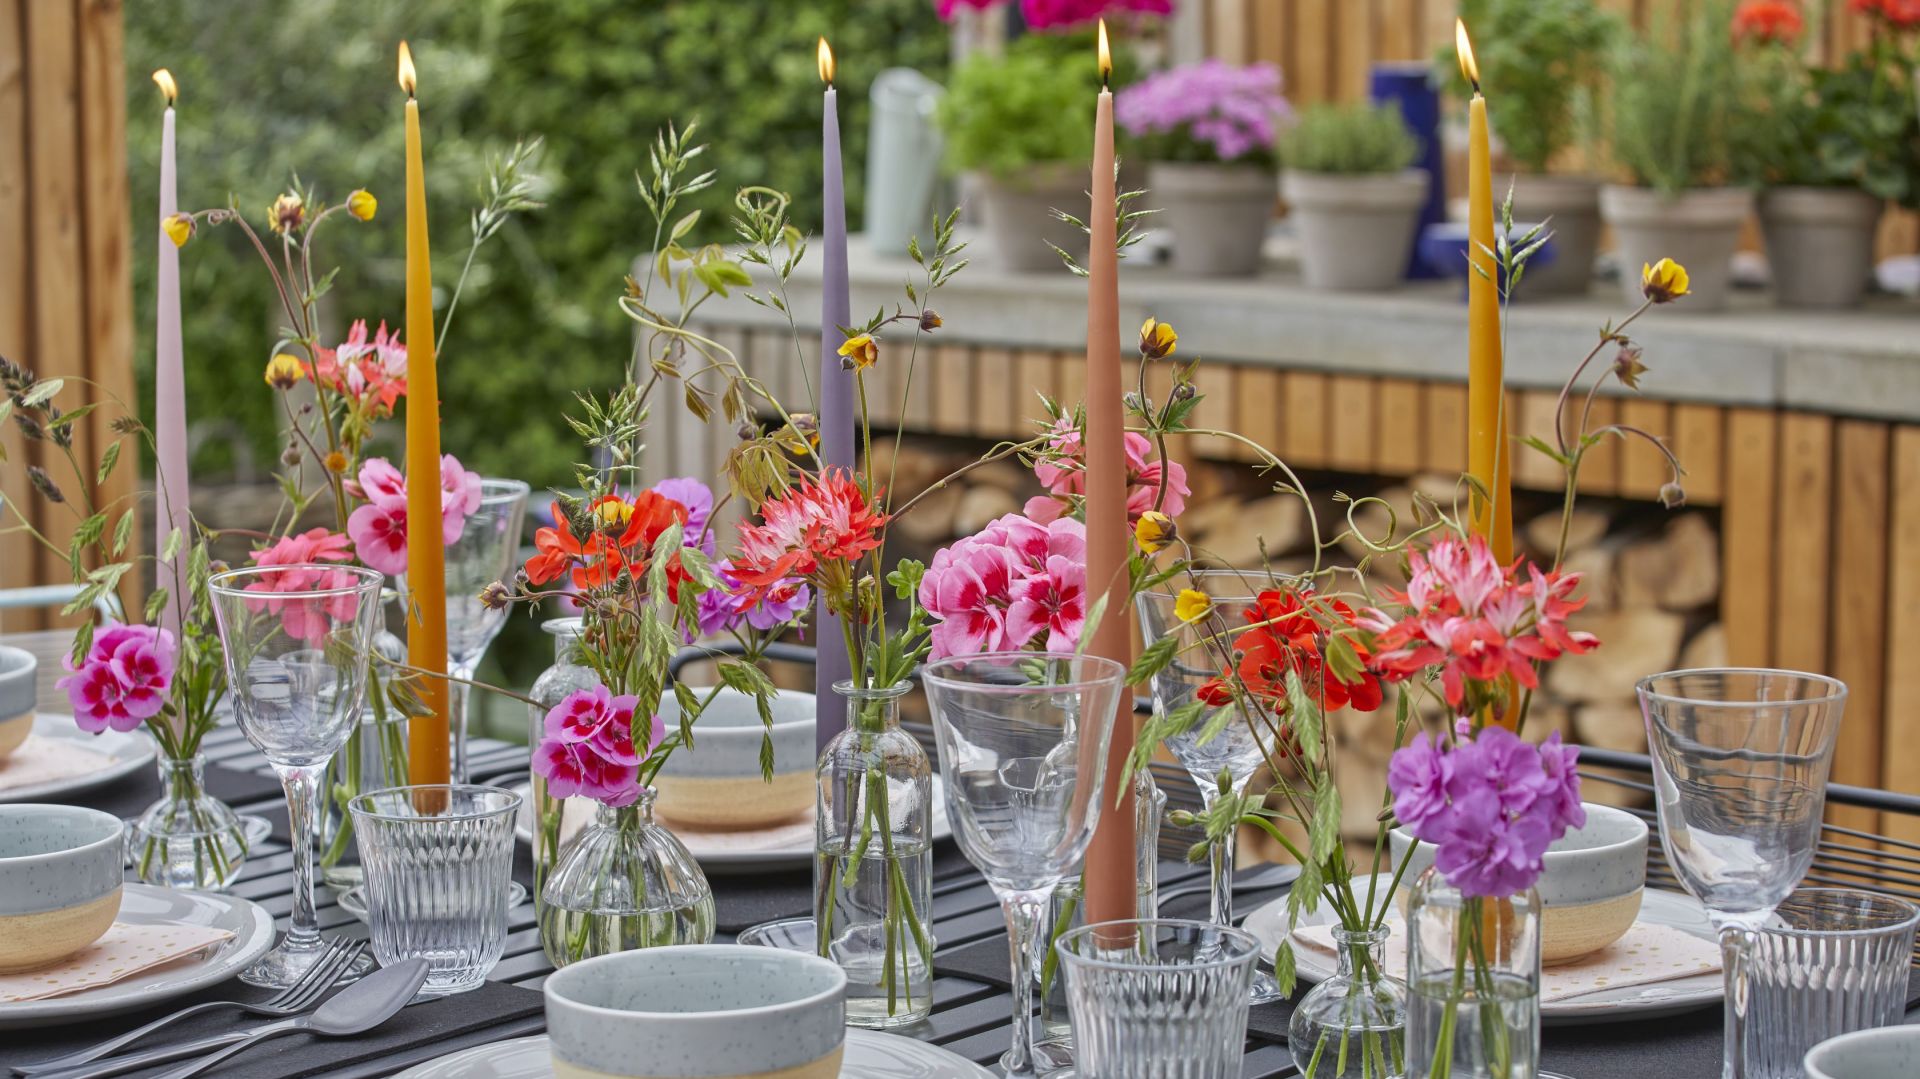 Wiosenne aranżacje. Super pomysły na dekorację stołu kwiatami!